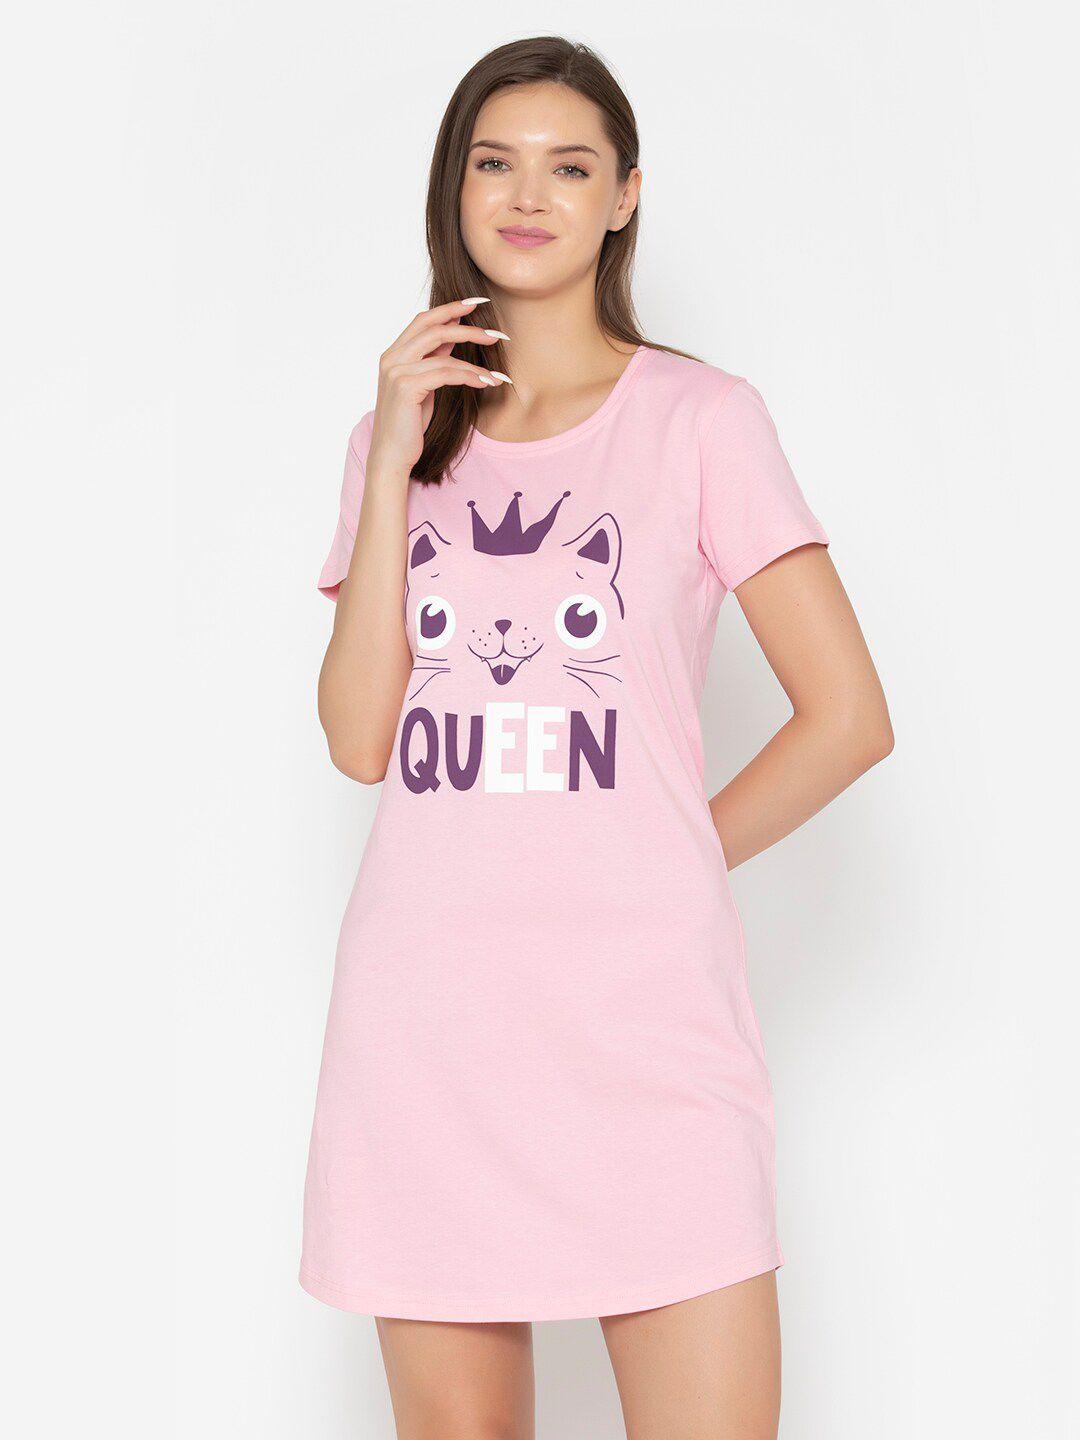 vami pink & white printed t-shirt nightdress